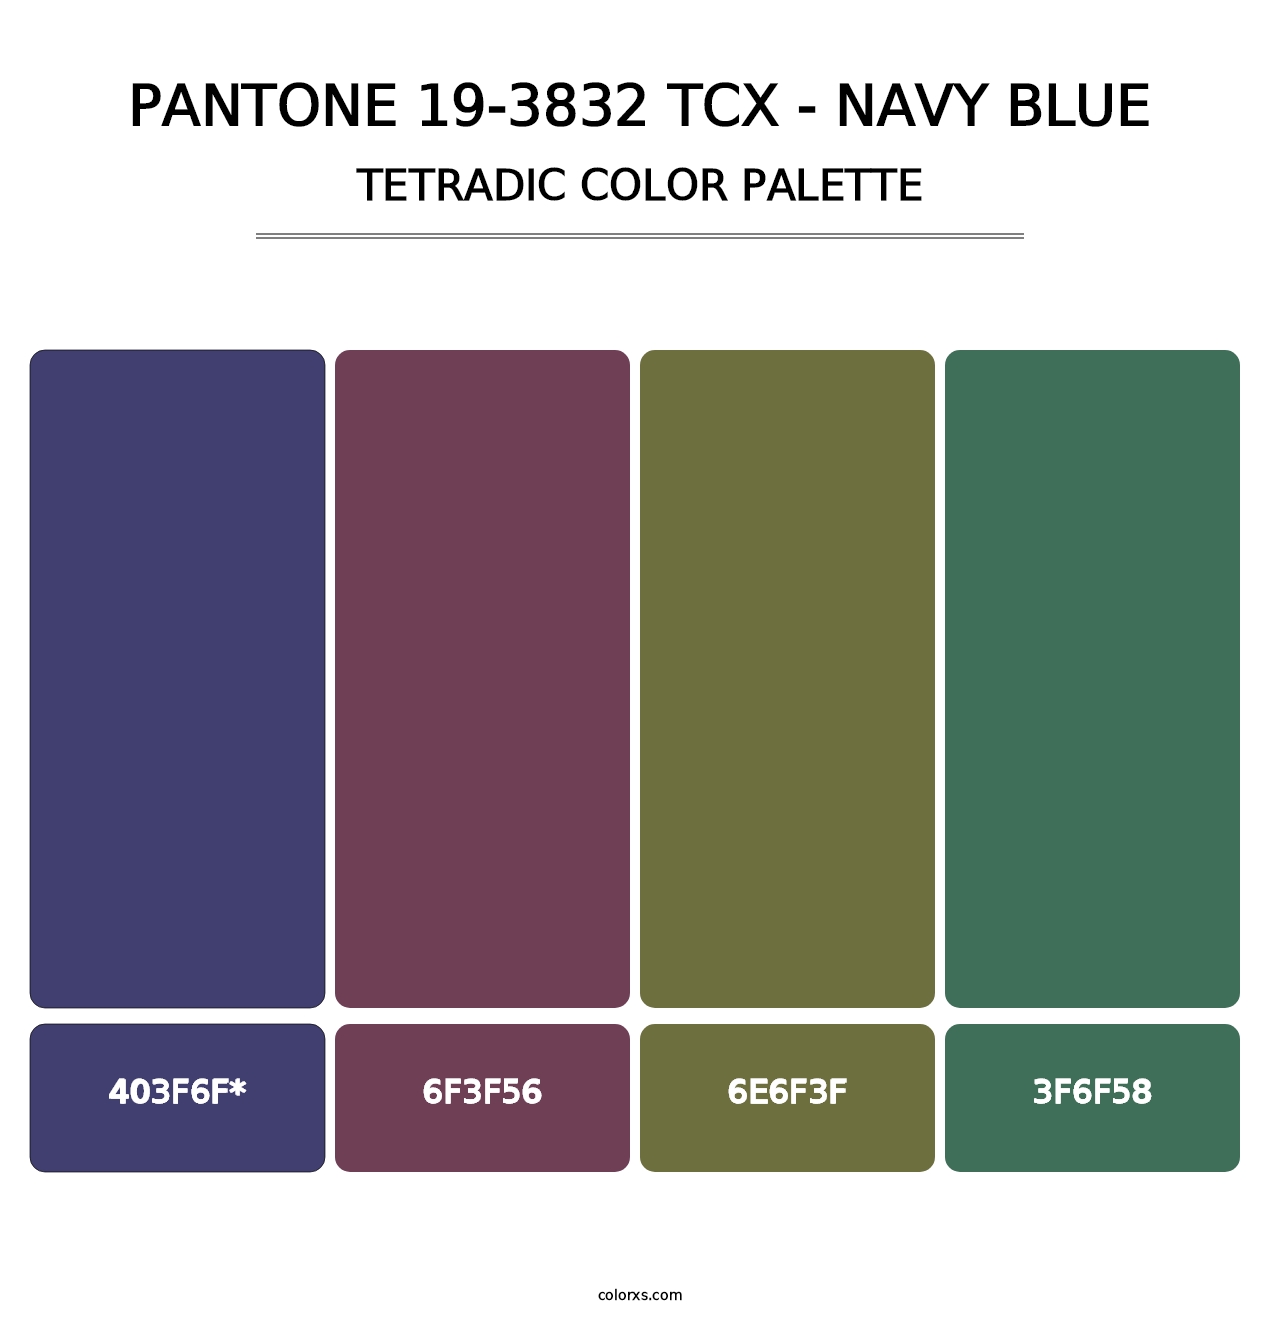 PANTONE 19-3832 TCX - Navy Blue - Tetradic Color Palette